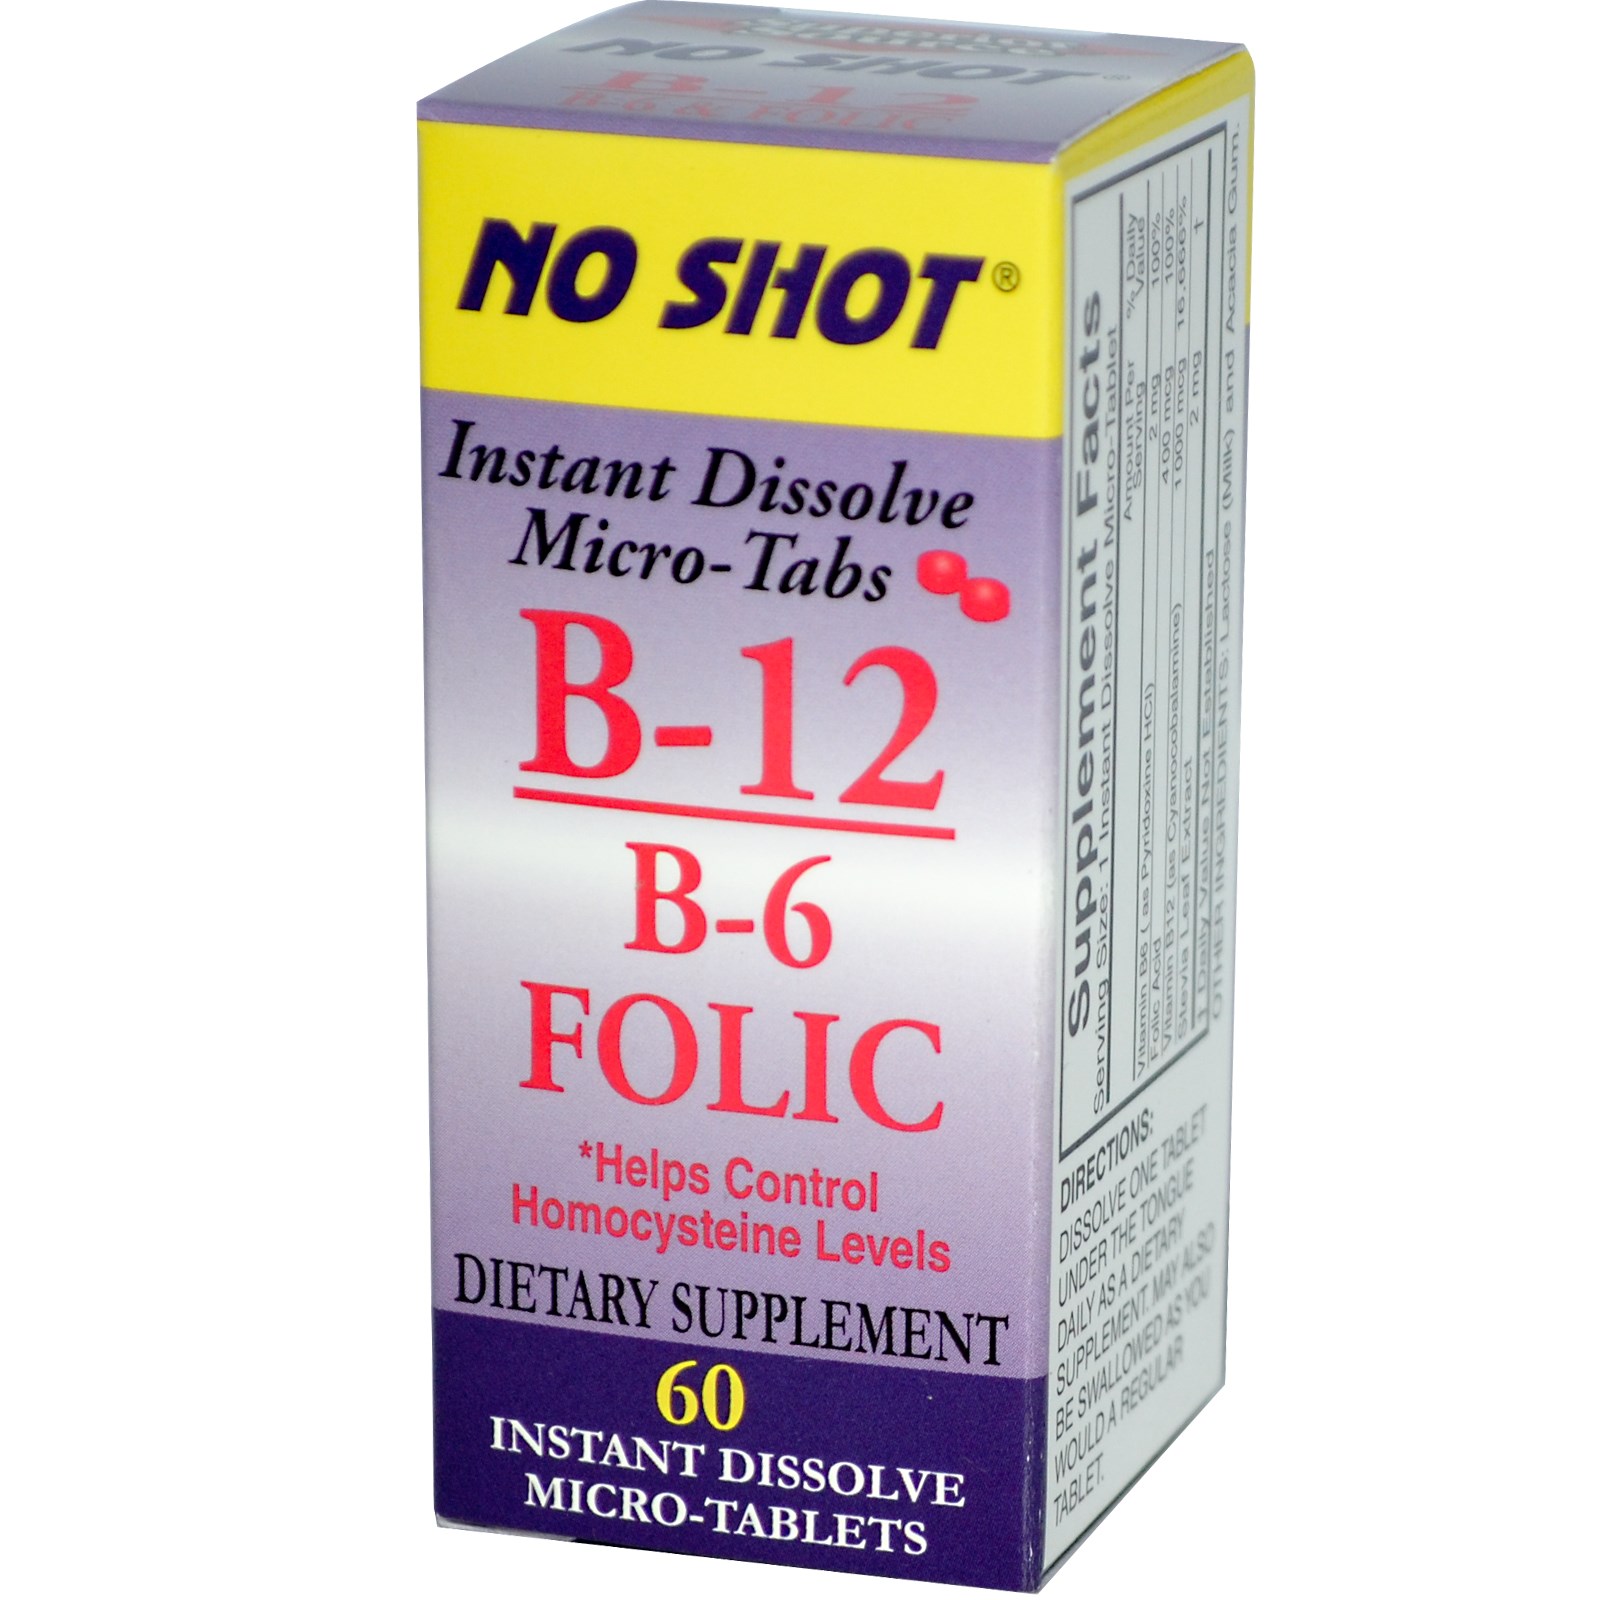 Б 12 фолиевая. Таблетки витамин b12 фолиевая кислота. B-6 B-12 folic acid (б-6 б-12 фоливая кислота) 60 леденцов (Kal). B6 b12. Витамины с MG b6 b12.